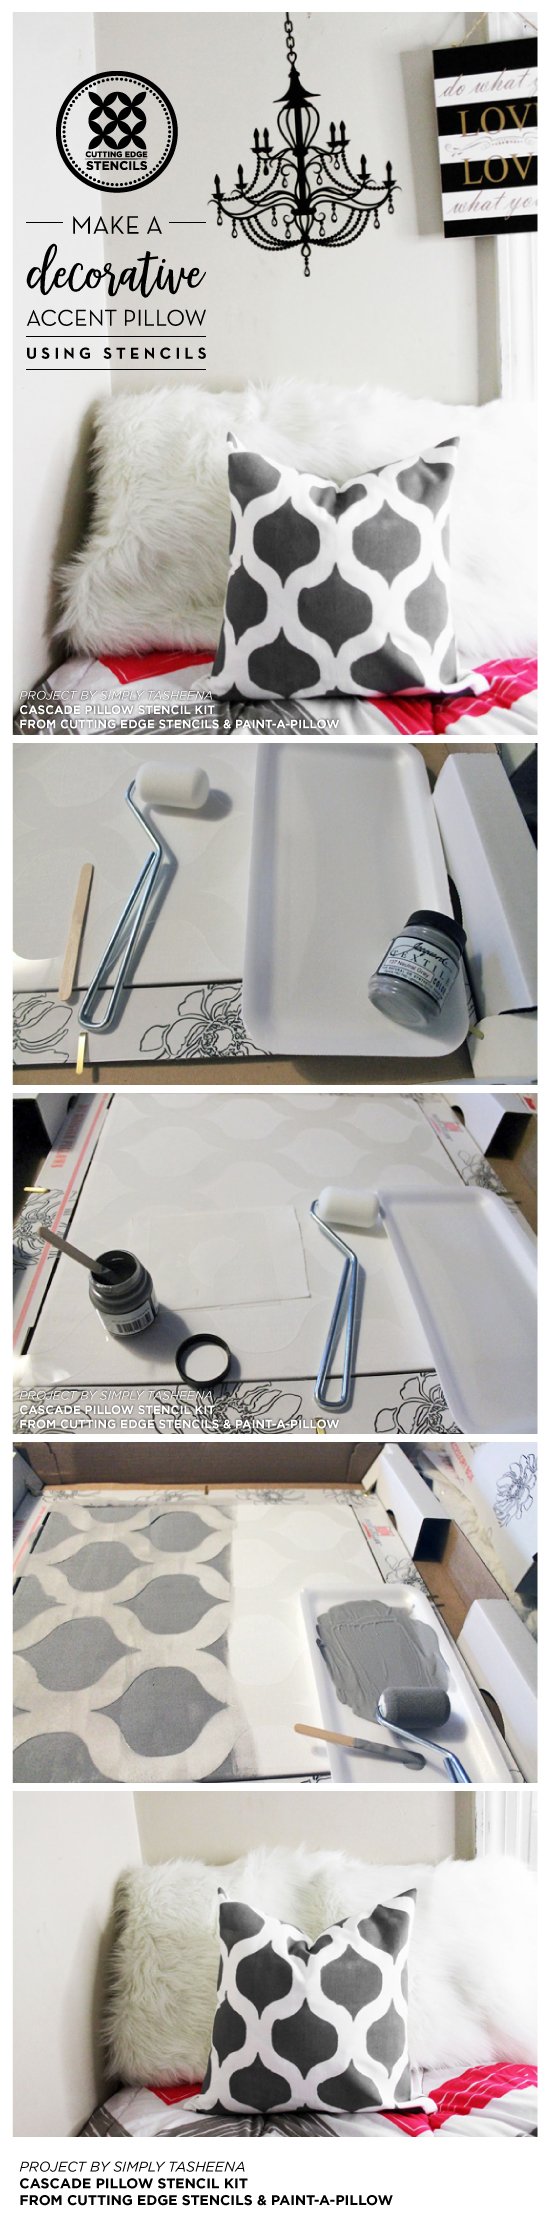 Cutting Edge Stencils shares how to stencil a DIY accent pillow using the Cascade Pillow Stencil Kit. http://www.cuttingedgestencils.com/cascade-stencils-paint-a-pillow-kit.html